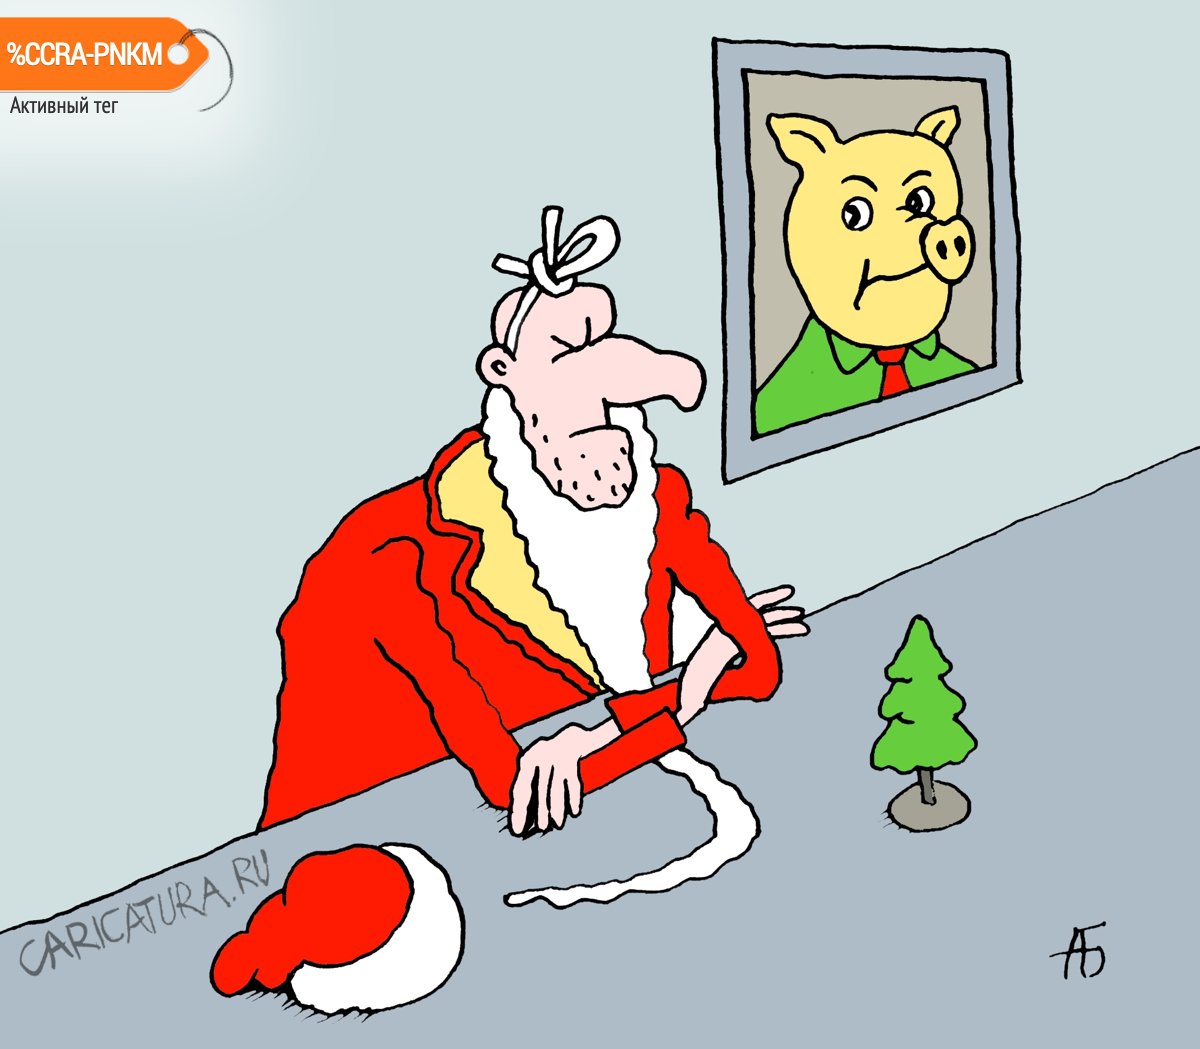 Карикатура "Офис Деда Мороза", Александр Бобырь